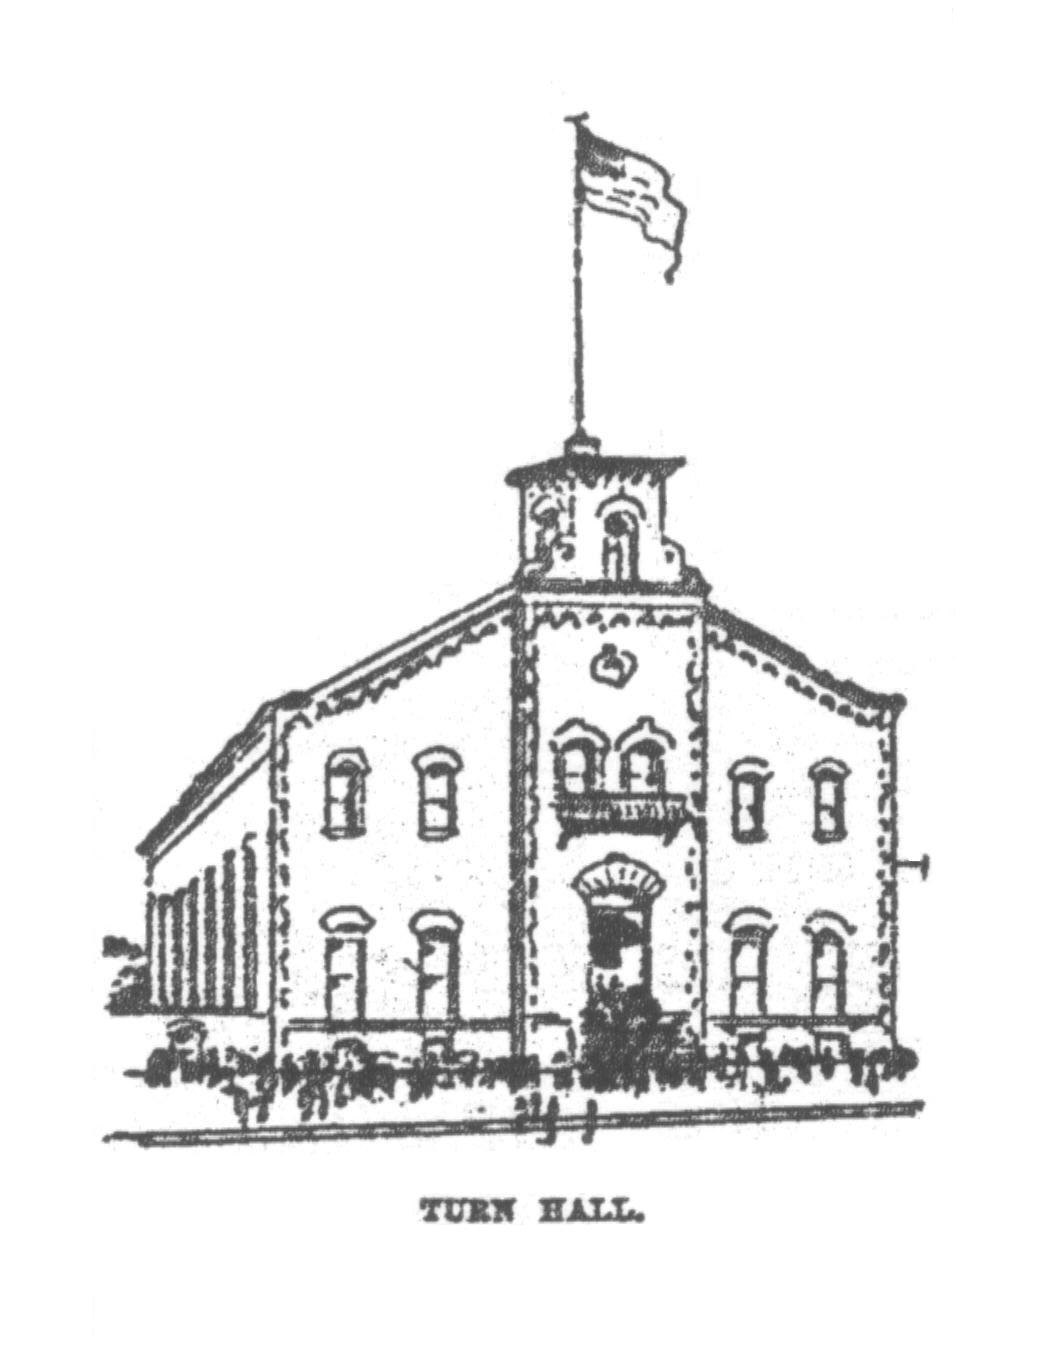 Turn Hall, 1894 anniversary article illustration